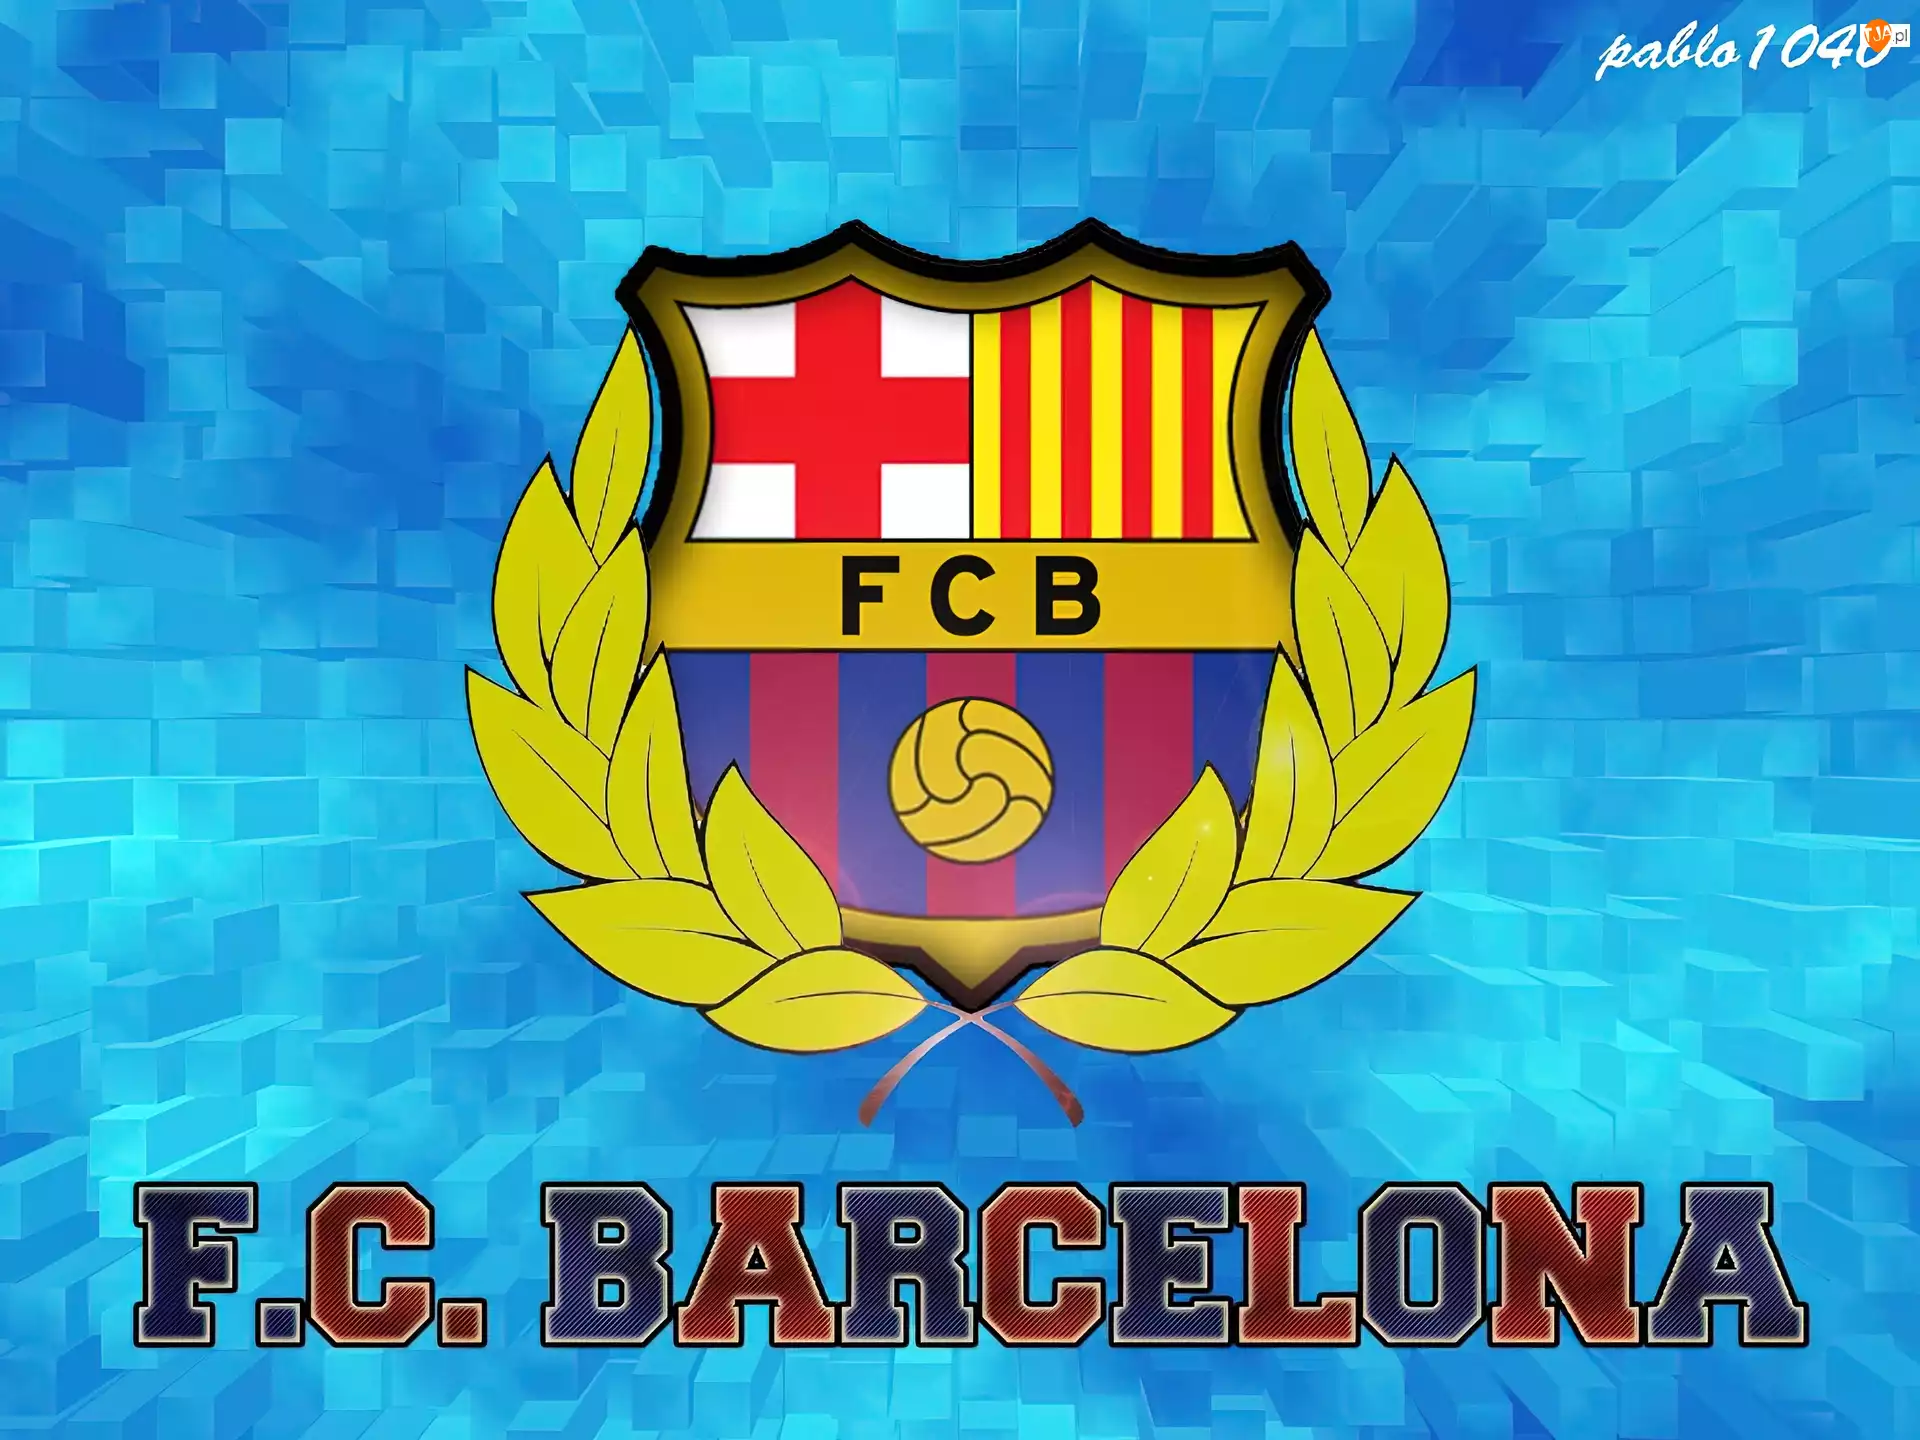 Barca, FC Barcelona